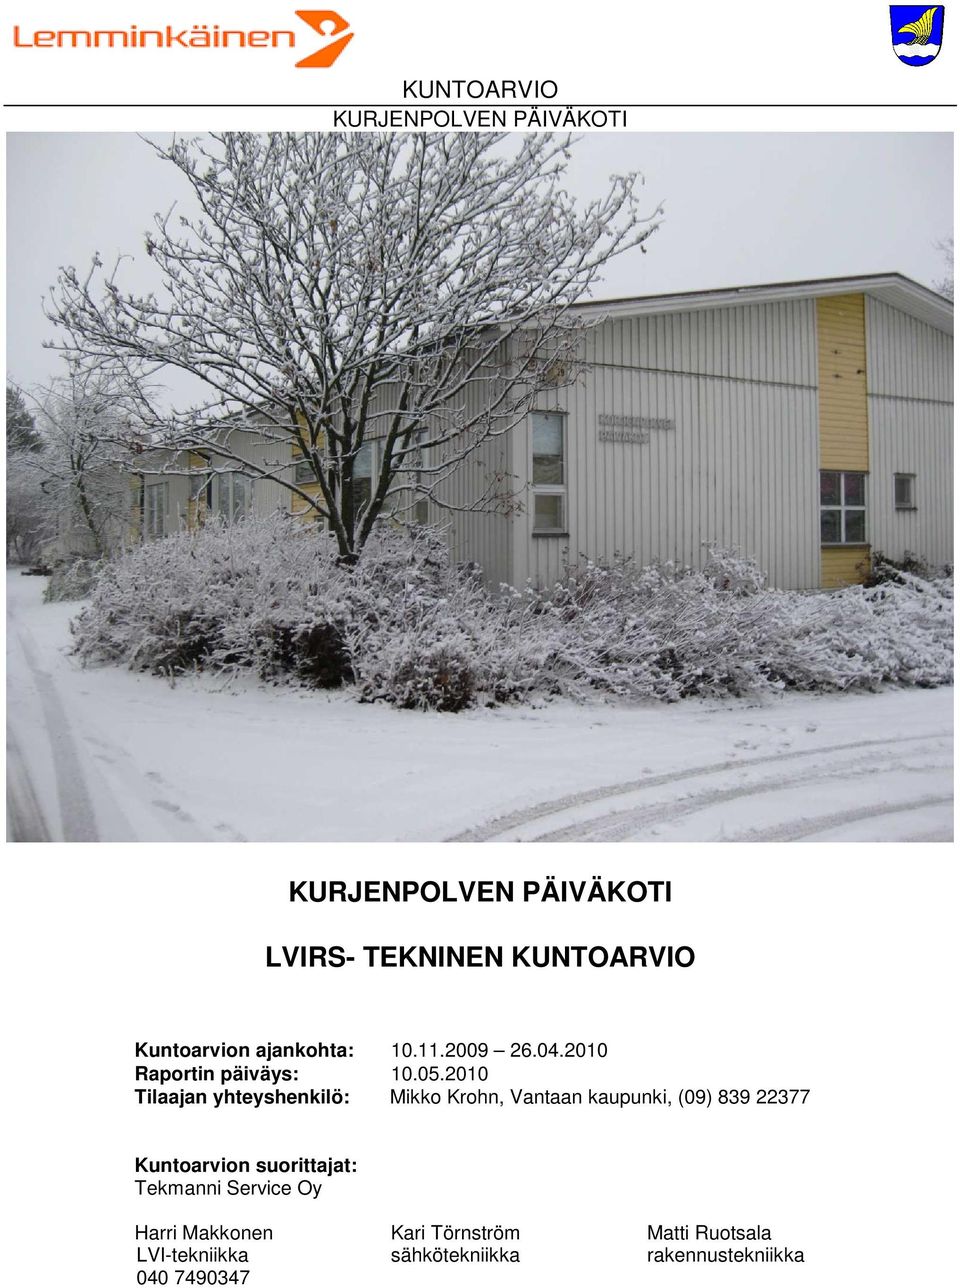 2010 Tilaajan yhteyshenkilö: Mikko Krohn, Vantaan kaupunki, (09) 839 22377